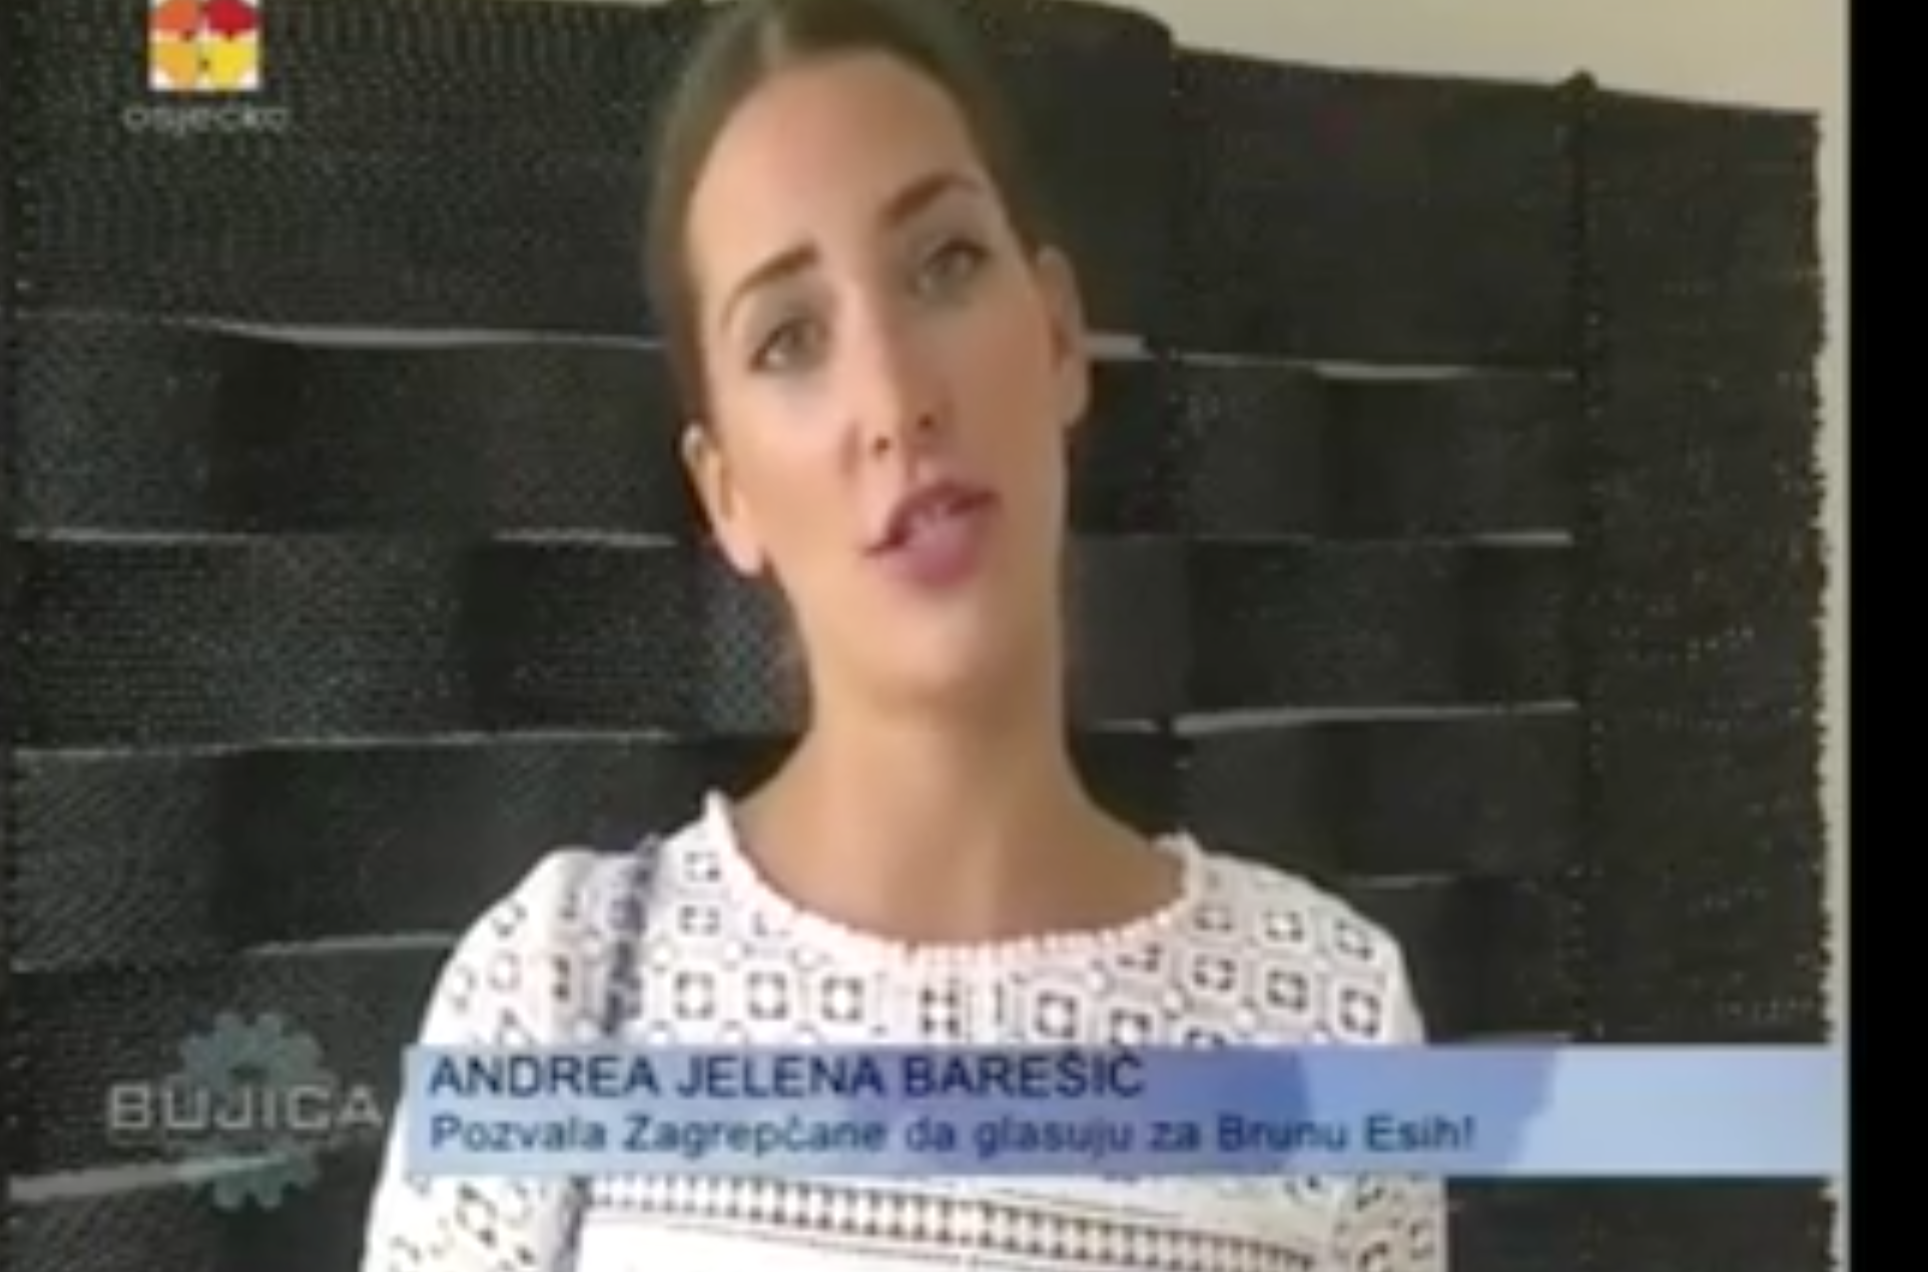 Iz videa u kojem Andrea Jelena Barešić poziva gledatelje Bujice da glasaju za gospođu Esih